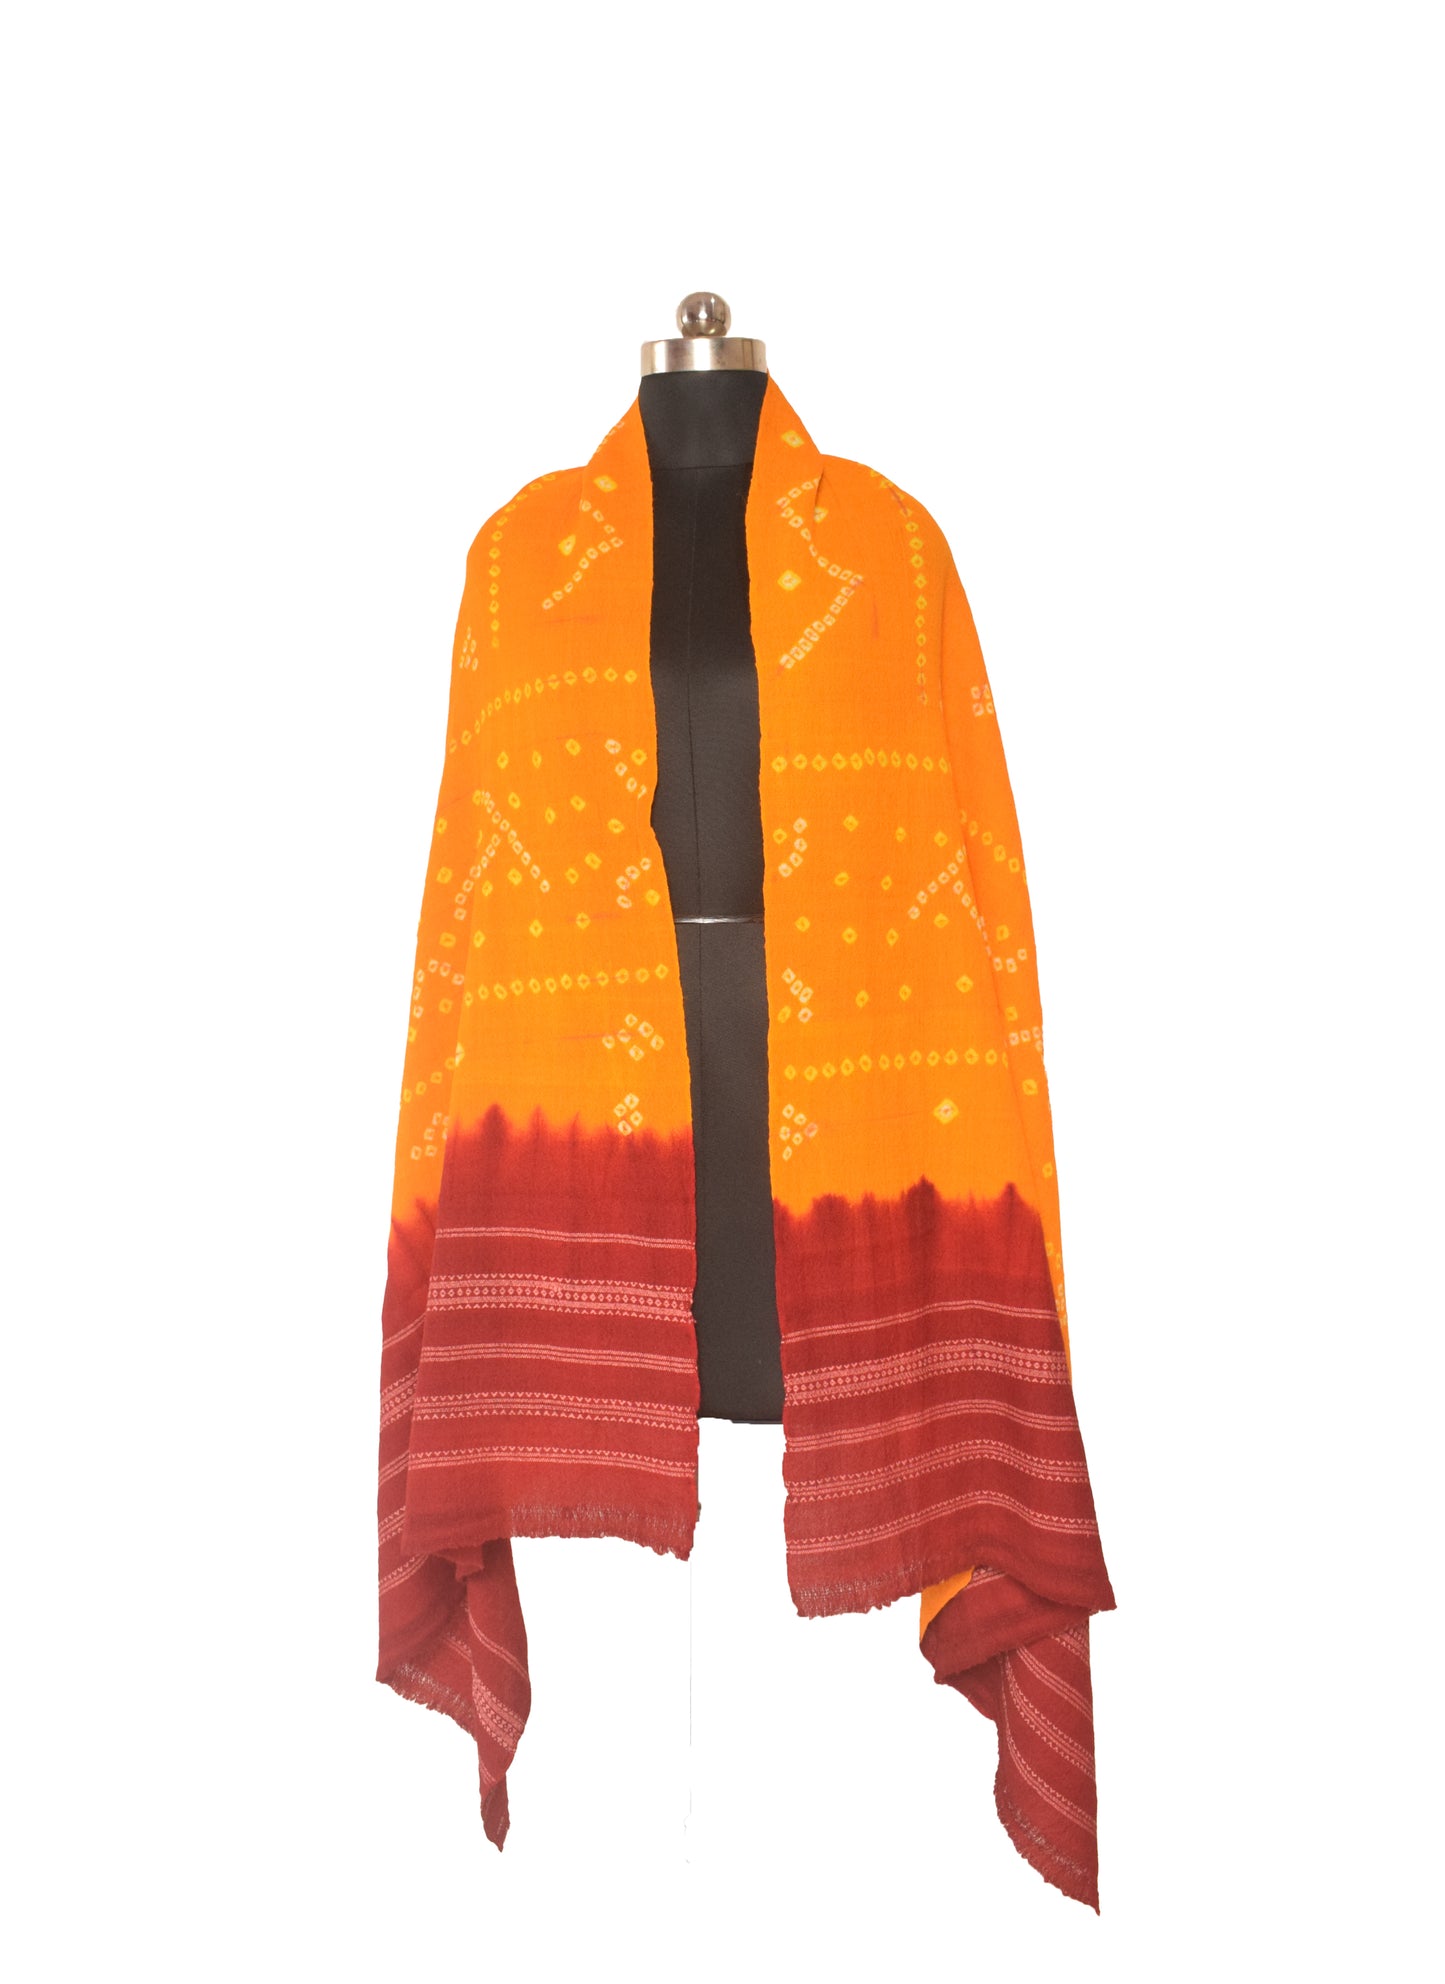 Bandhej ( Tie-Dye) Wool Shawl   - 2.1 Mtr Length    -  SKU : DB27B02B